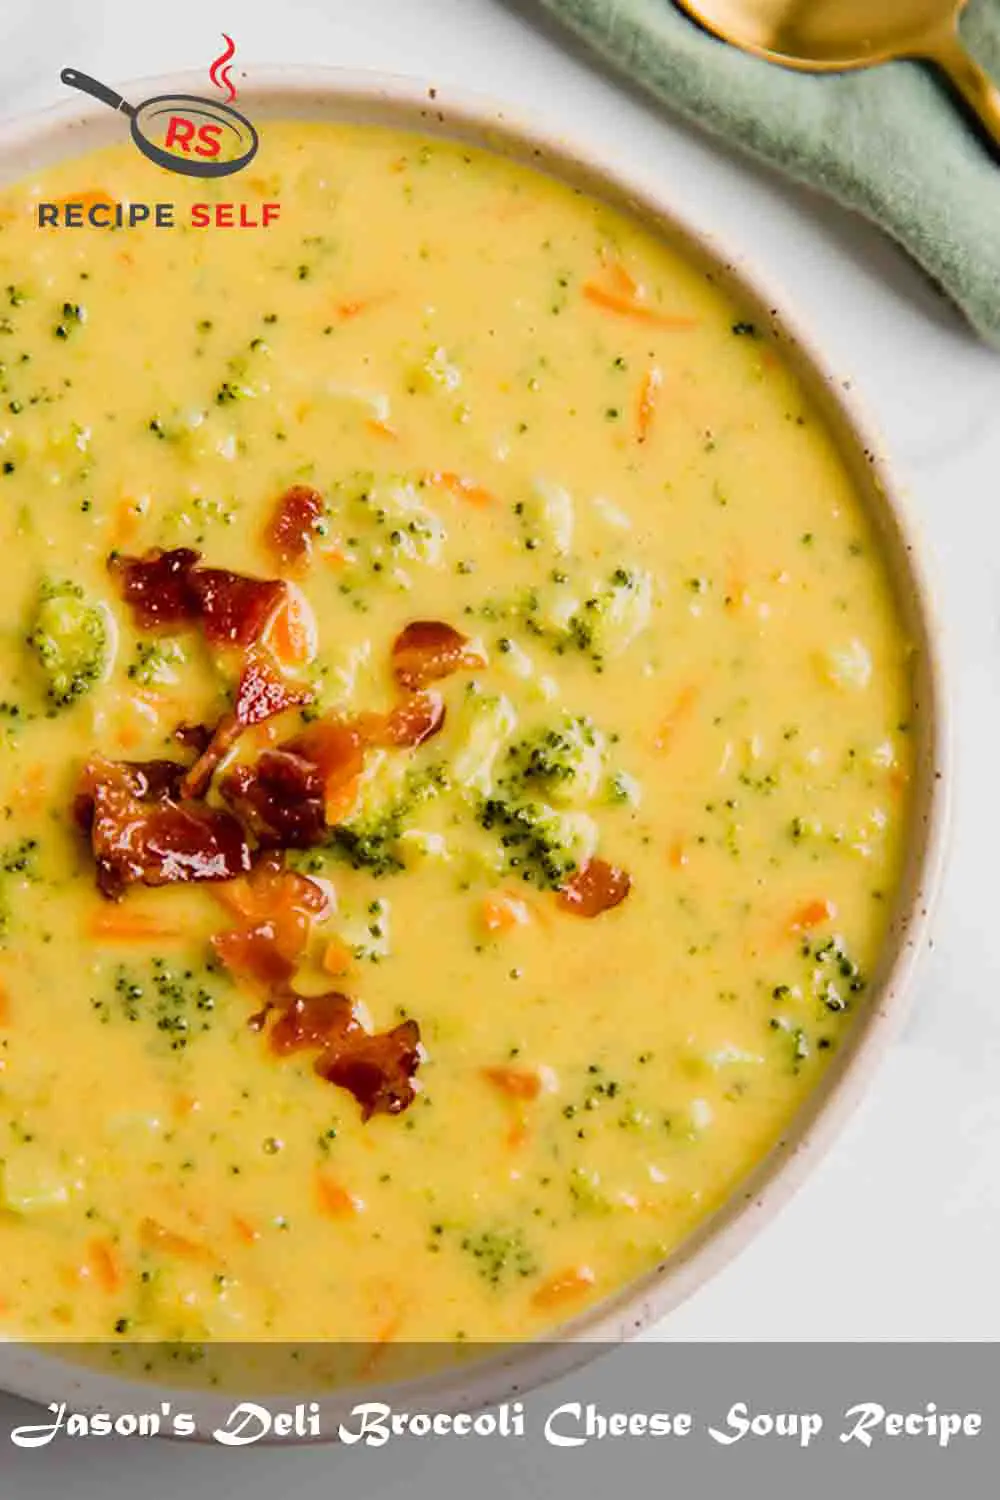 Jason's Deli Broccoli Cheese Soup Recipe Recipe Self